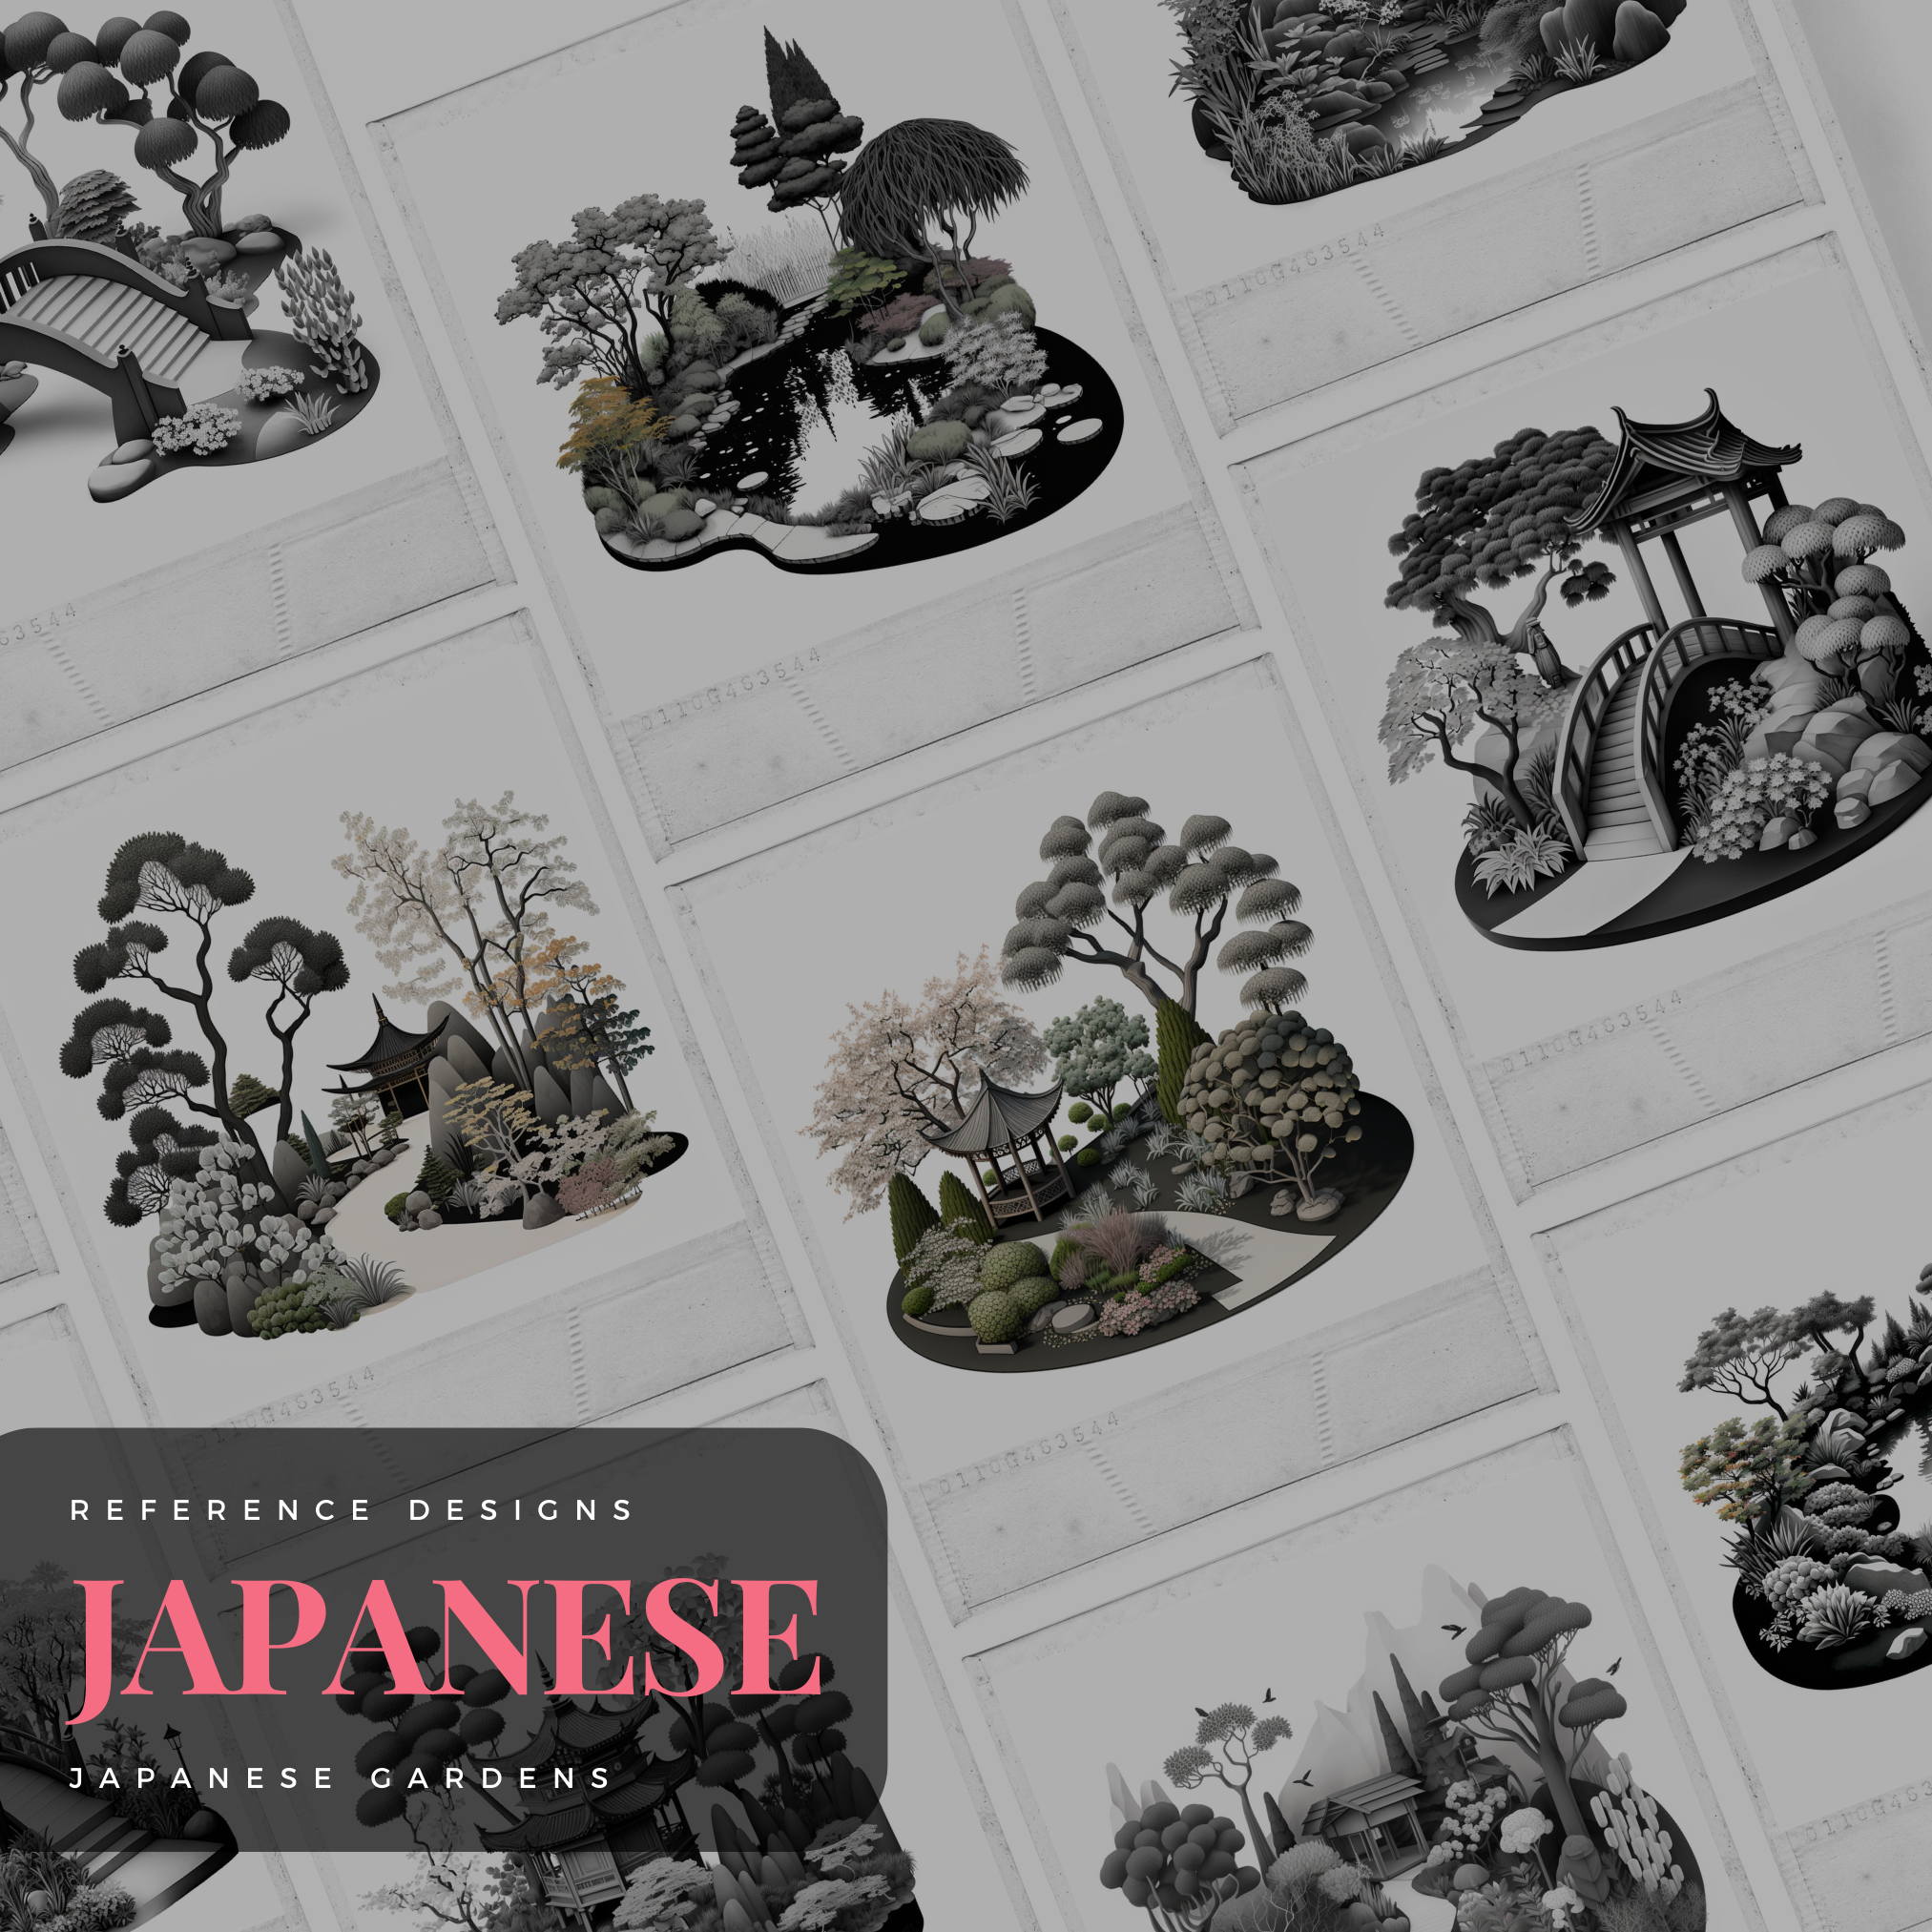 Japanese Gardens Digital Reference Design Collection: 50 Procreate & Sketchbook Images